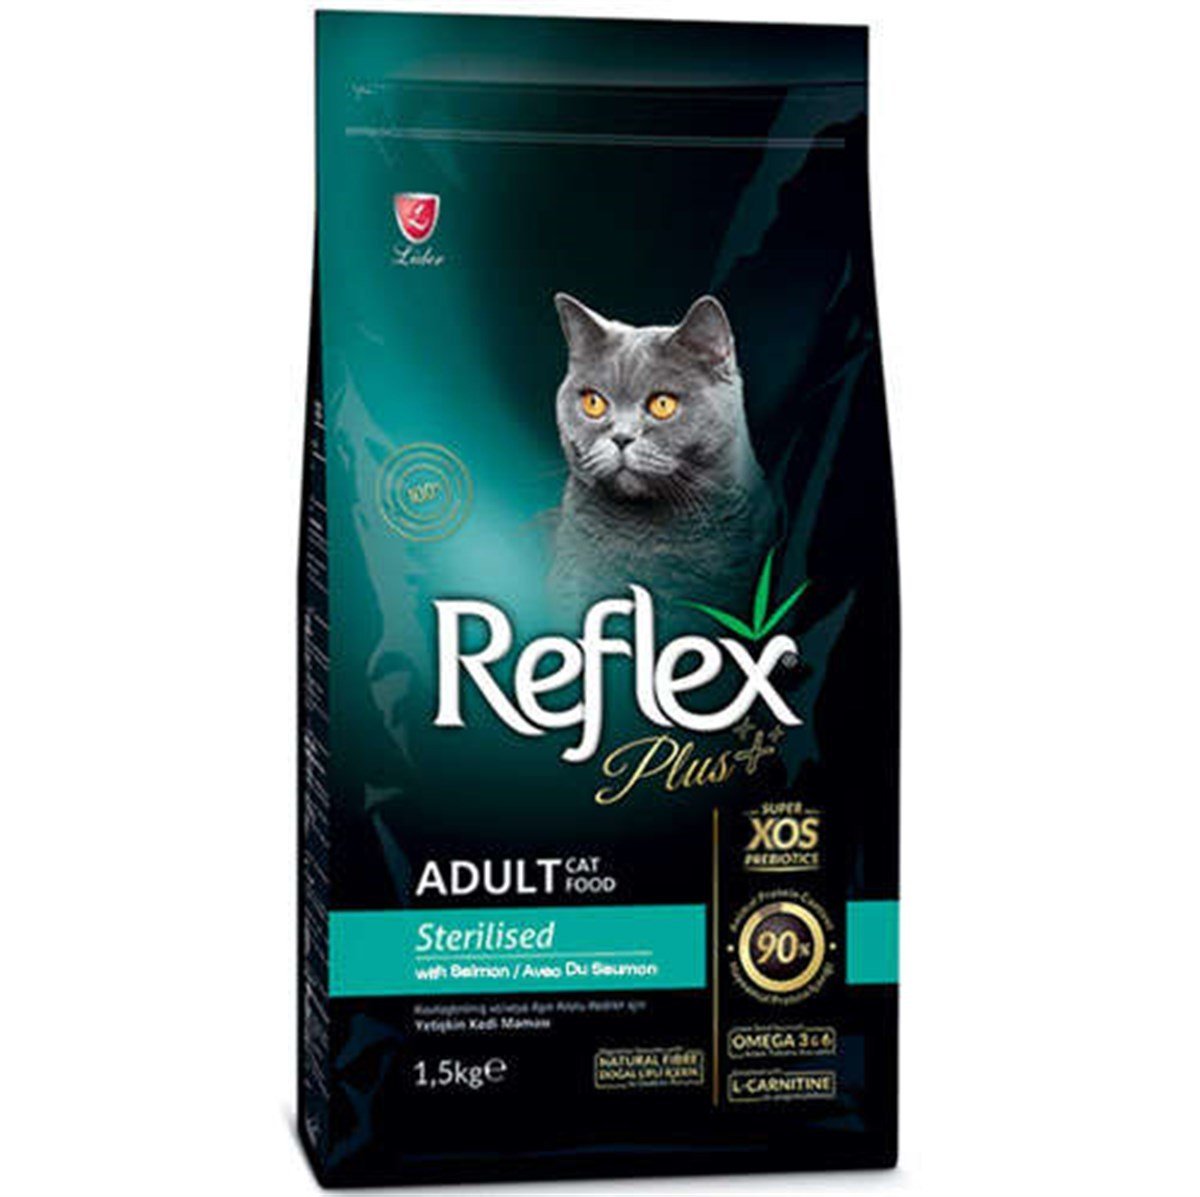 Reflex Plus Somonlu Kısırlaştırılmış Kedi Maması 1.5 Kg Petza